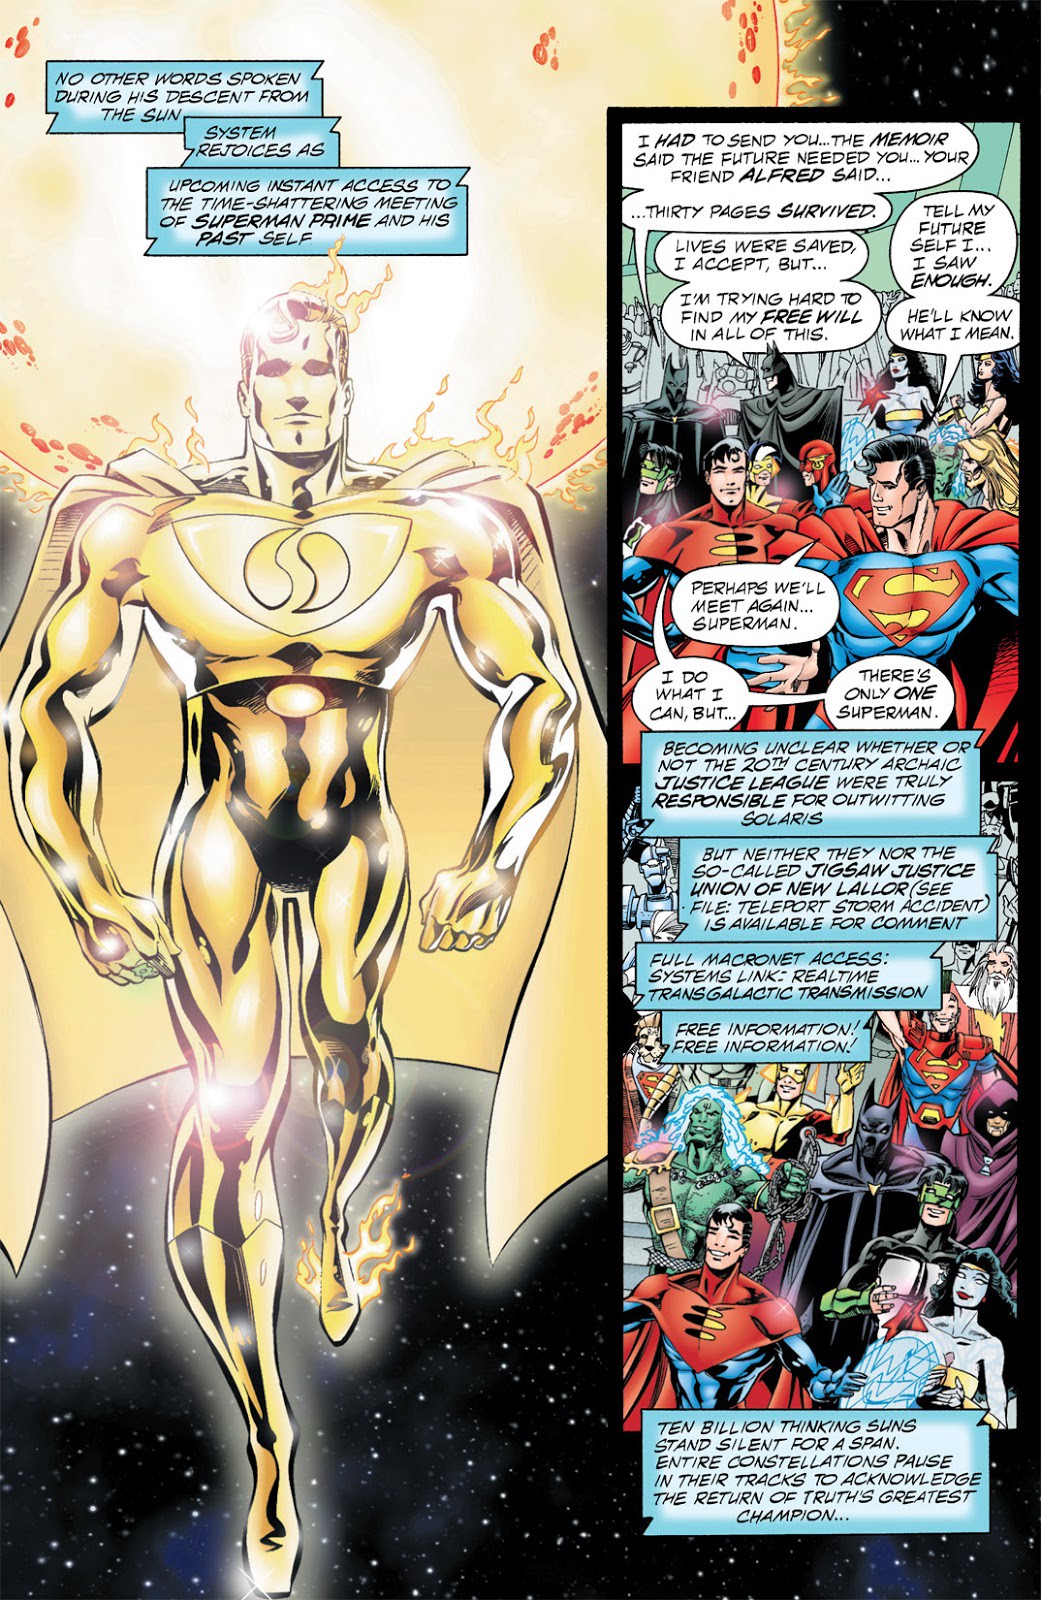 Comics Trivia: Khám phá sức mạnh của Superman Prime One Million, phiên bản mạnh nhất của Siêu Nhân từ trước đến nay - Ảnh 2.